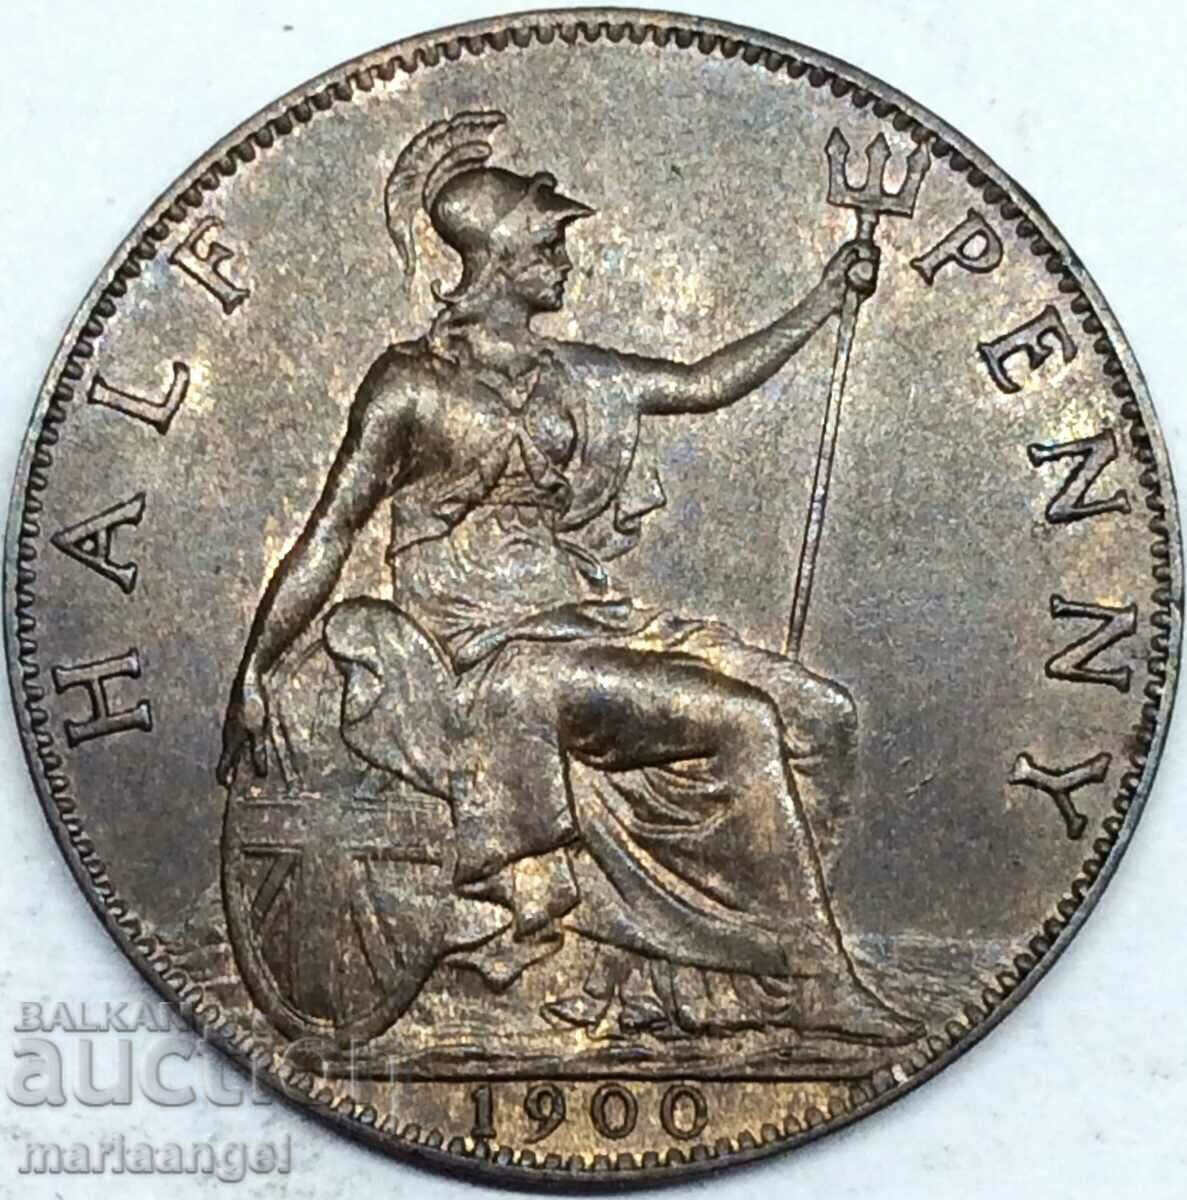 Μεγάλη Βρετανία 1/2 Penny 1900 Victoria UNC Χάλκινο